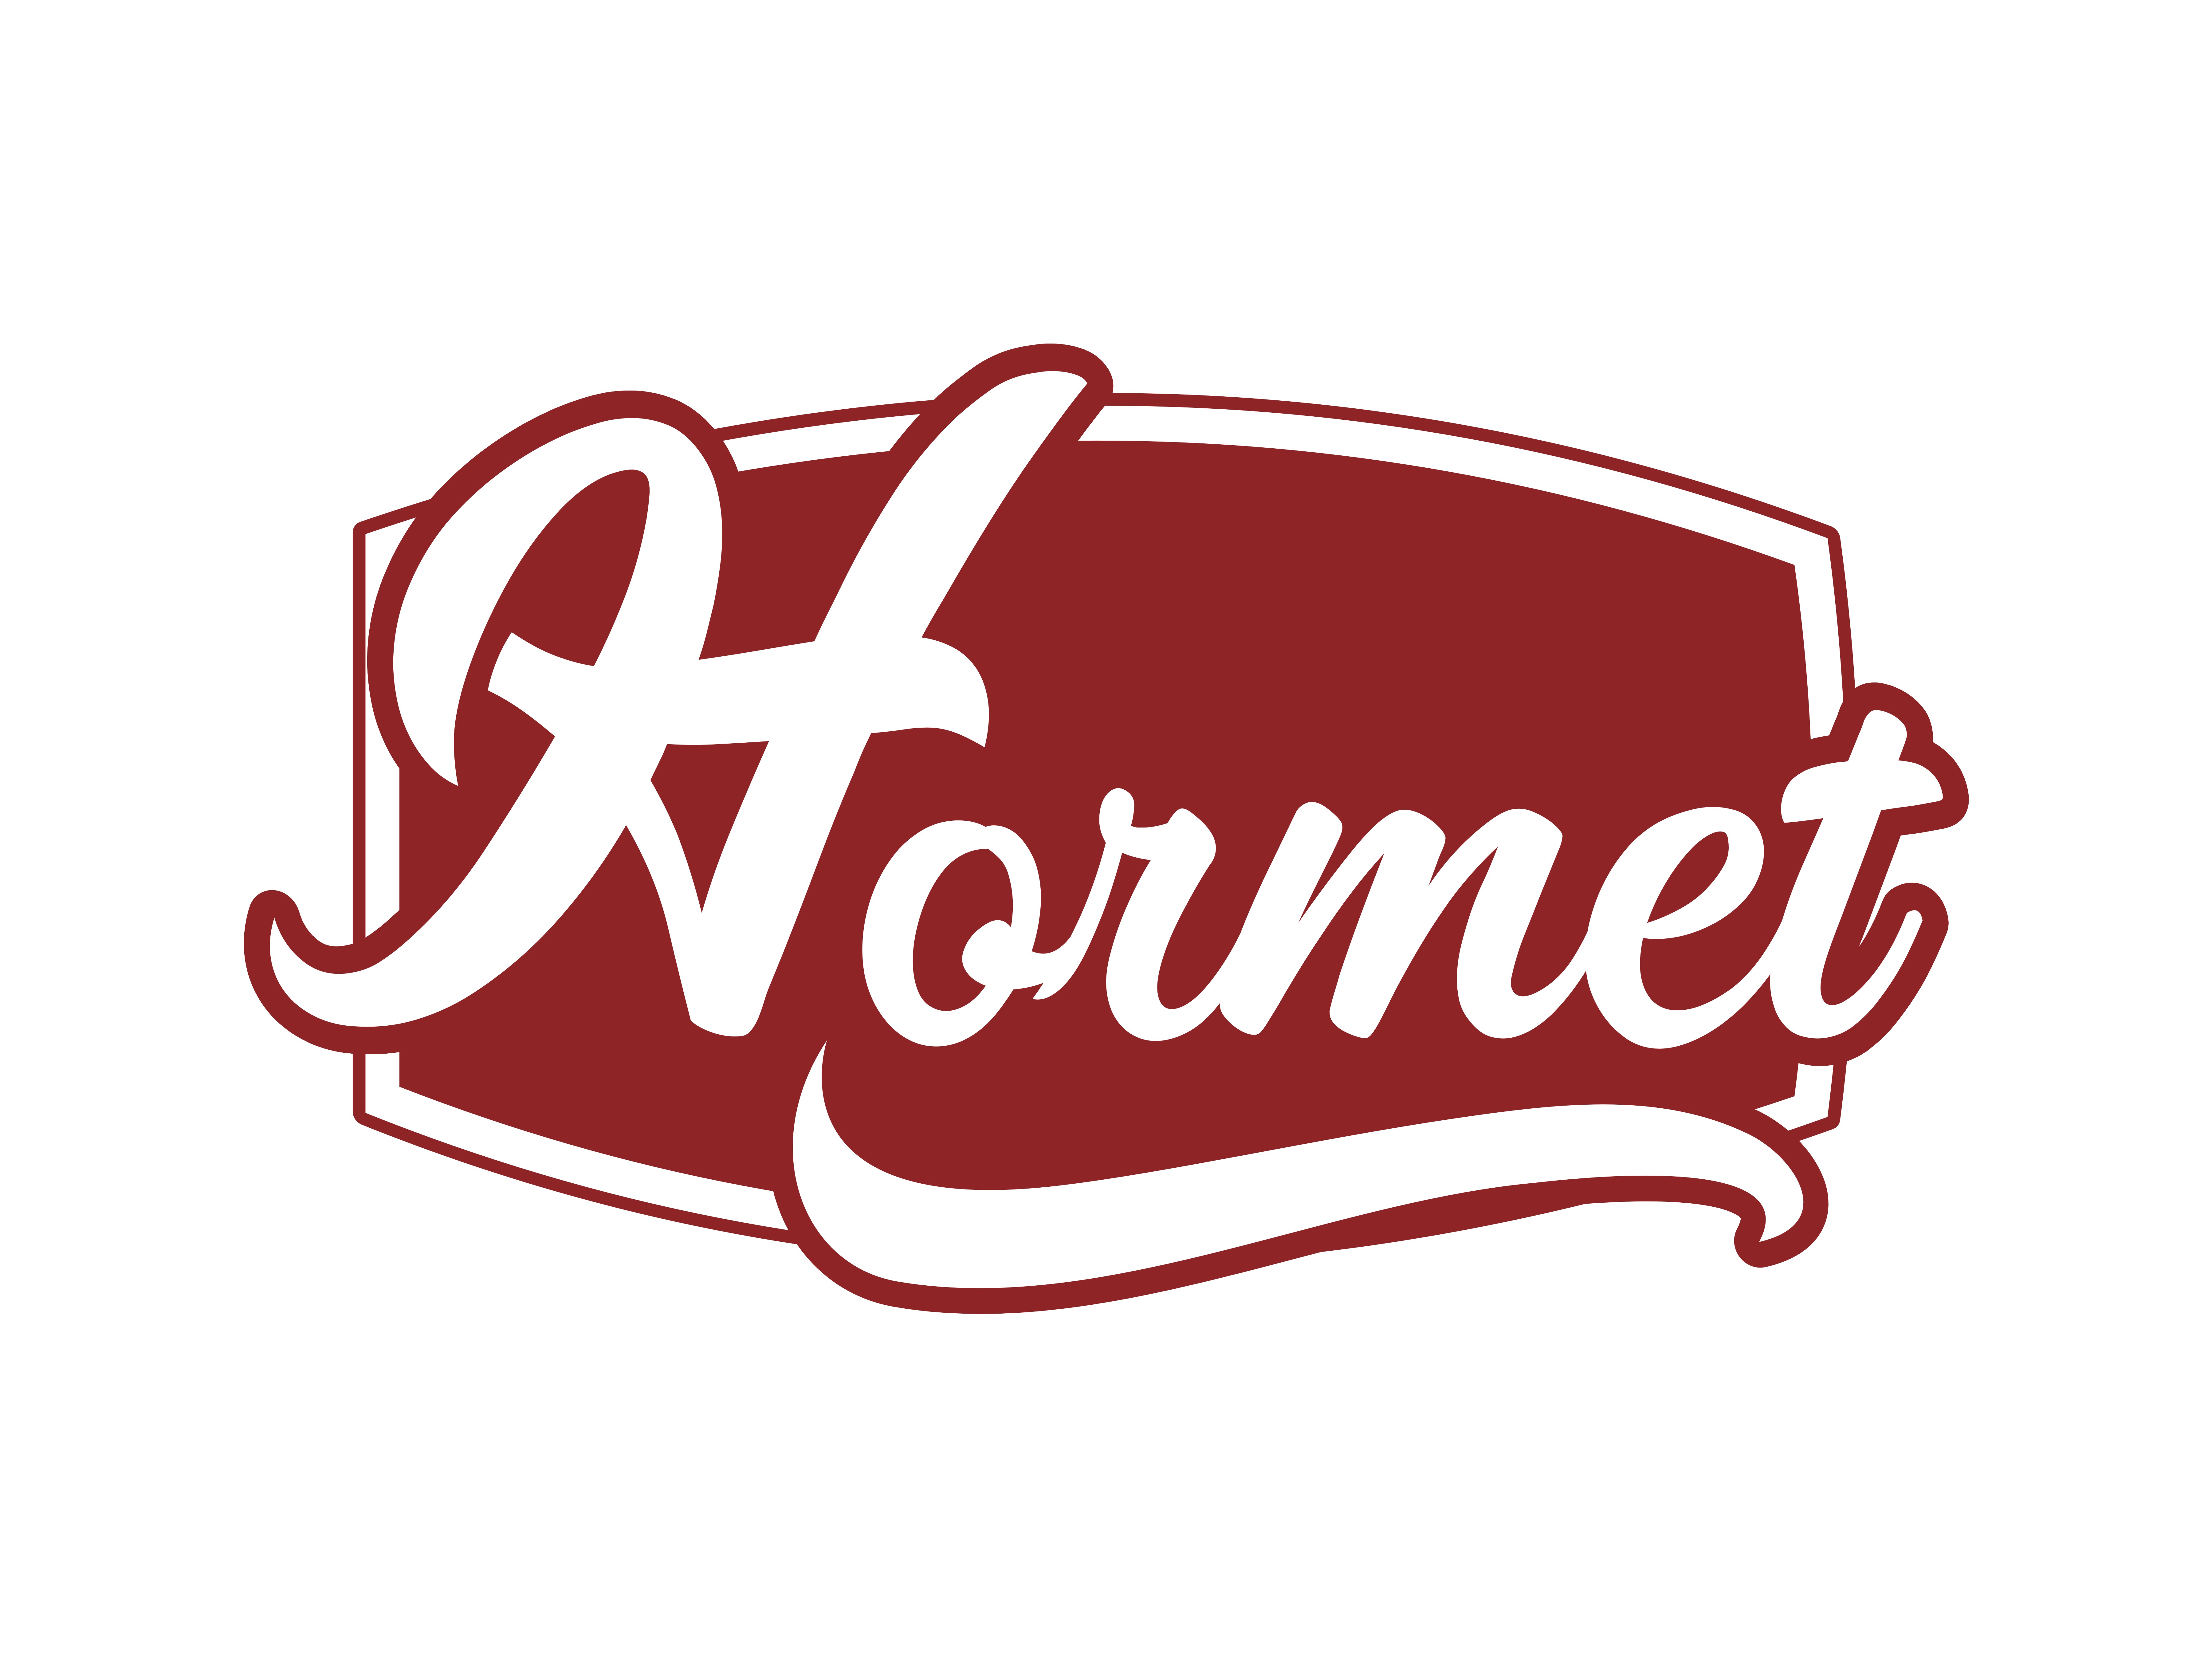 Hormet innovations Pvt Ltd.